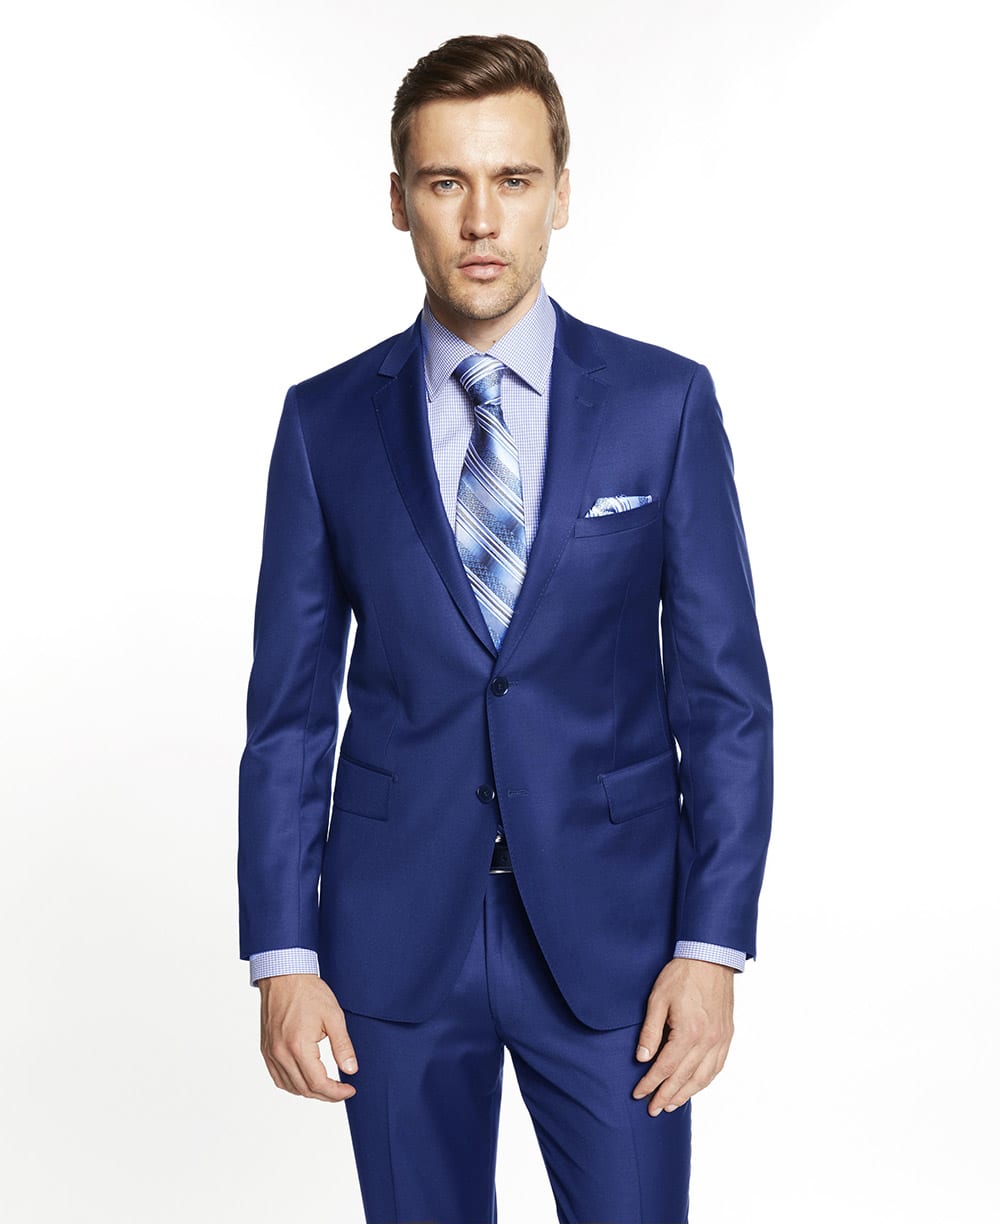 Men's Indigo Blue Slim Fit Vested Suit- Three Piece Suits for Sale – Flex  Suits